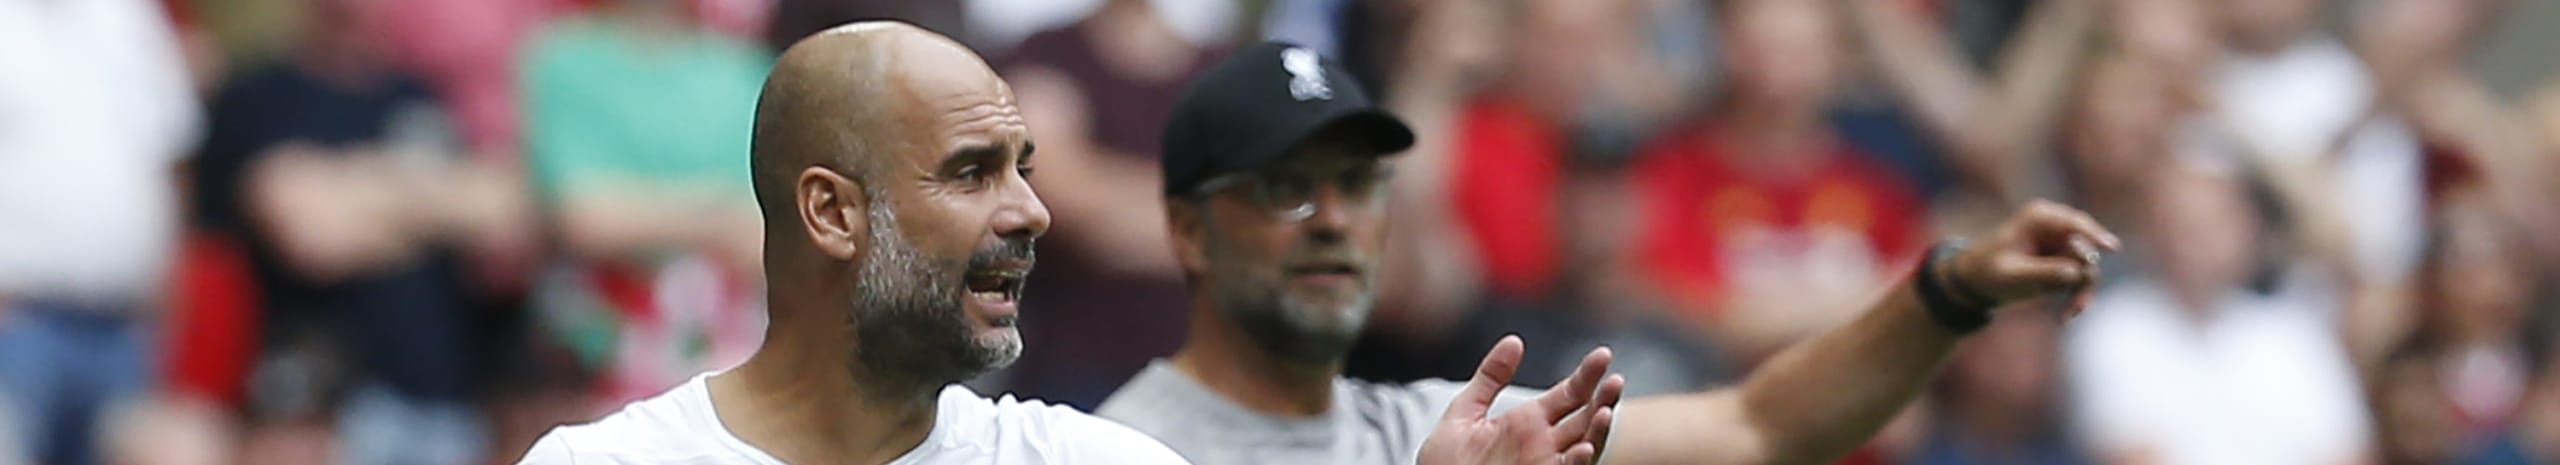 Manchester City-Liverpool, Guardiola sfida Klopp: in palio molto più dei 3 punti